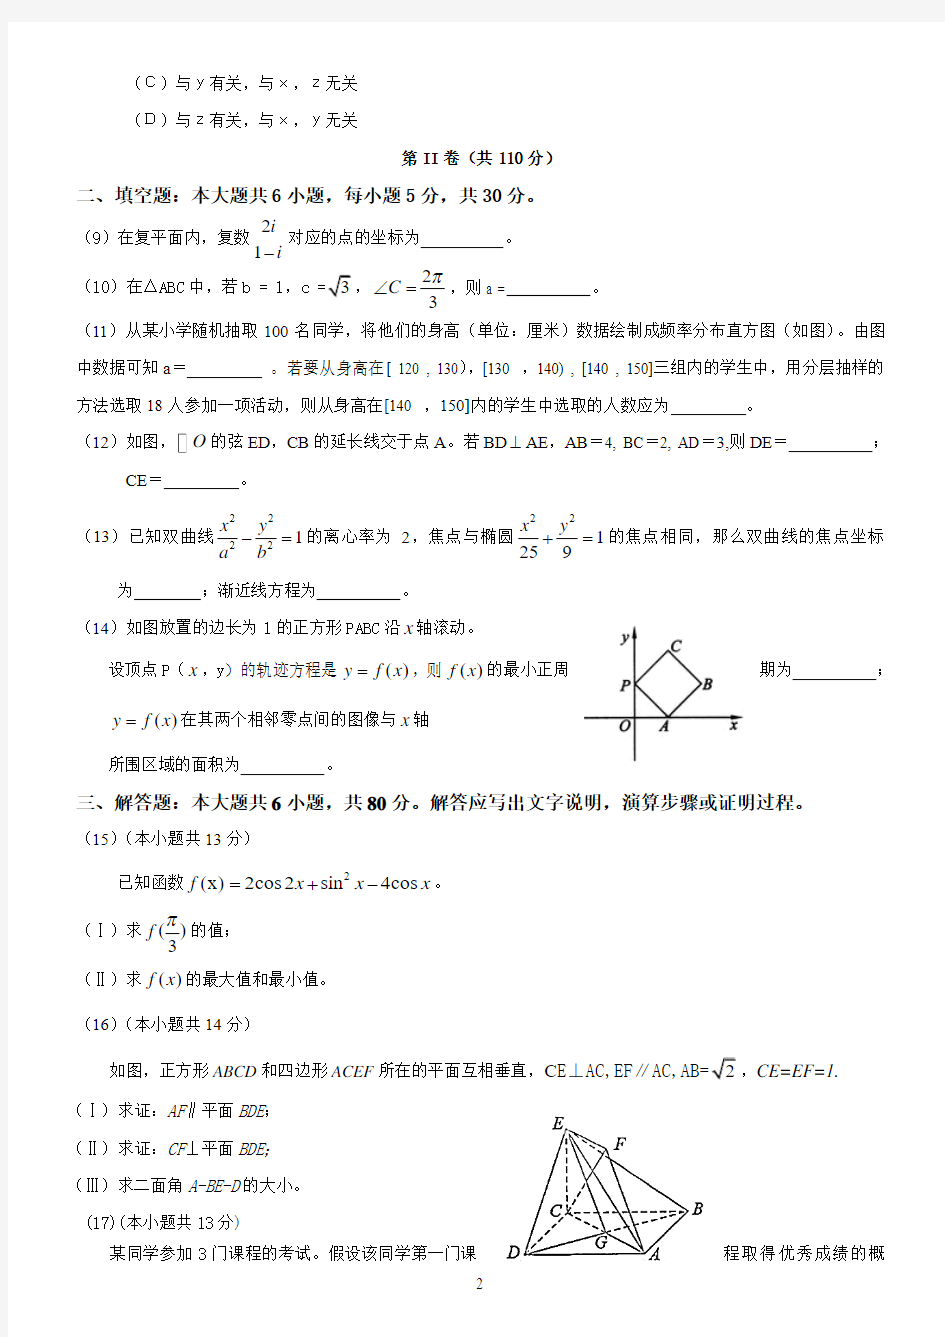 2010年北京高考数学(理科)试题与答案